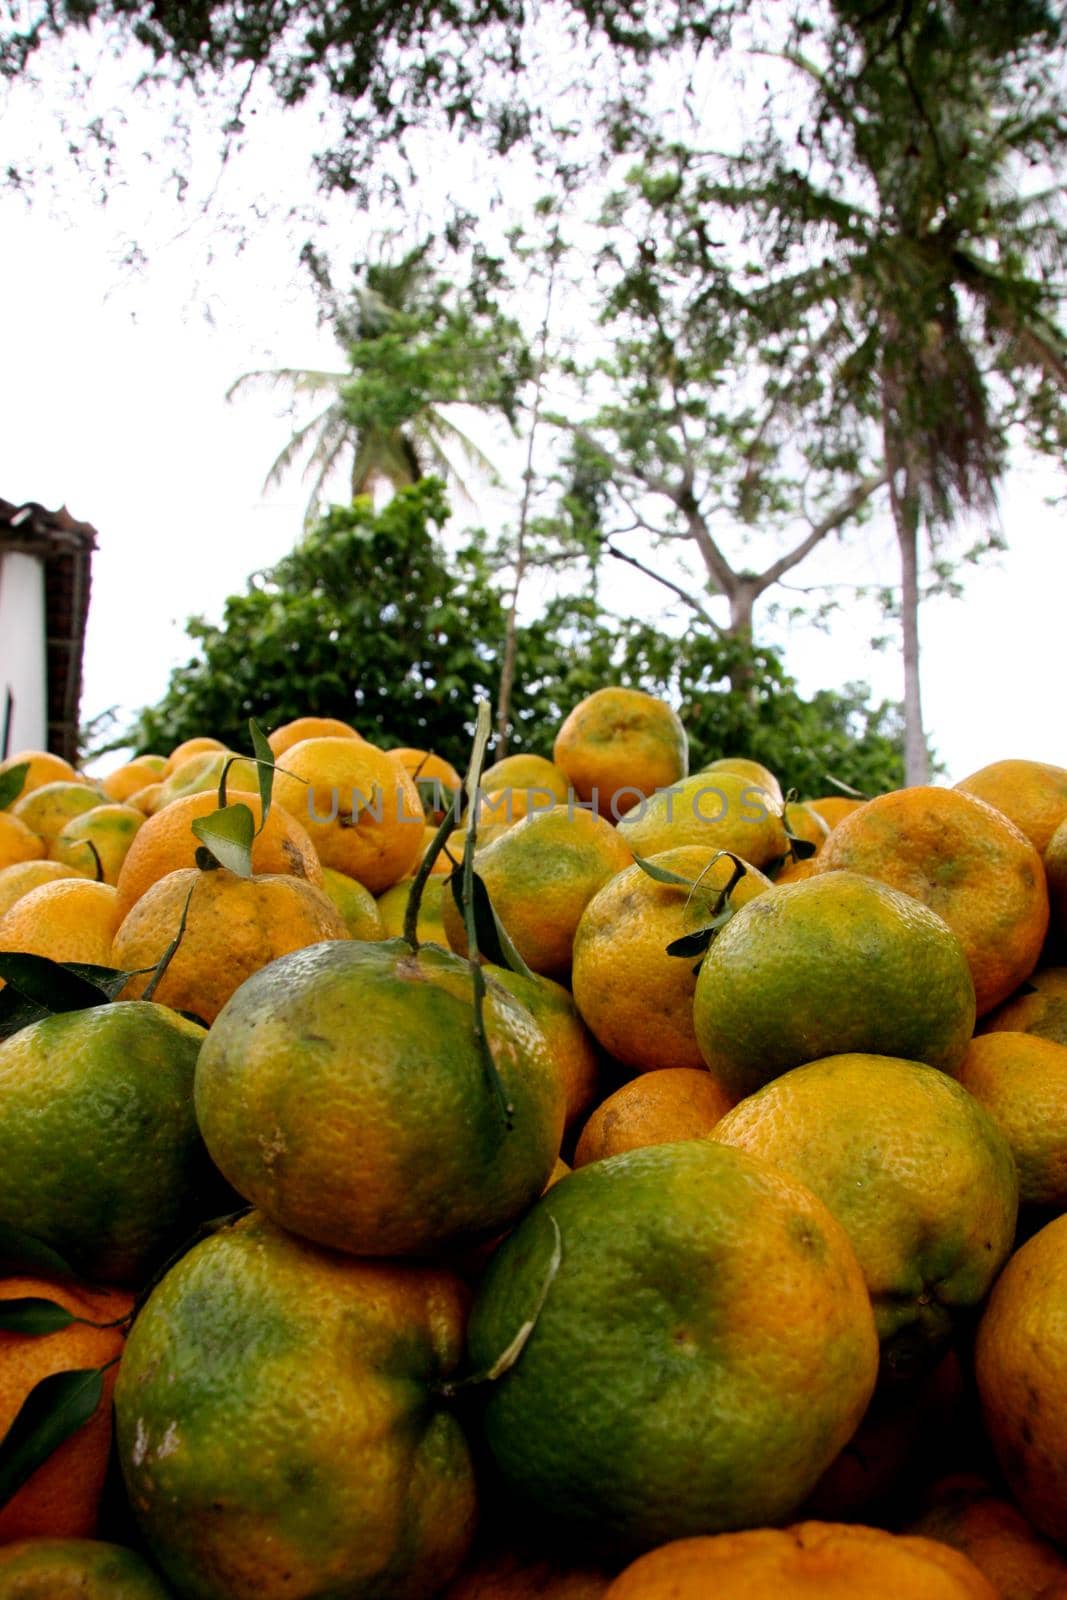 santo antonio de jesus, bahia / brazil - november 20, 2007: tangerine harvest in the city of Santo Antonio de Jesus.